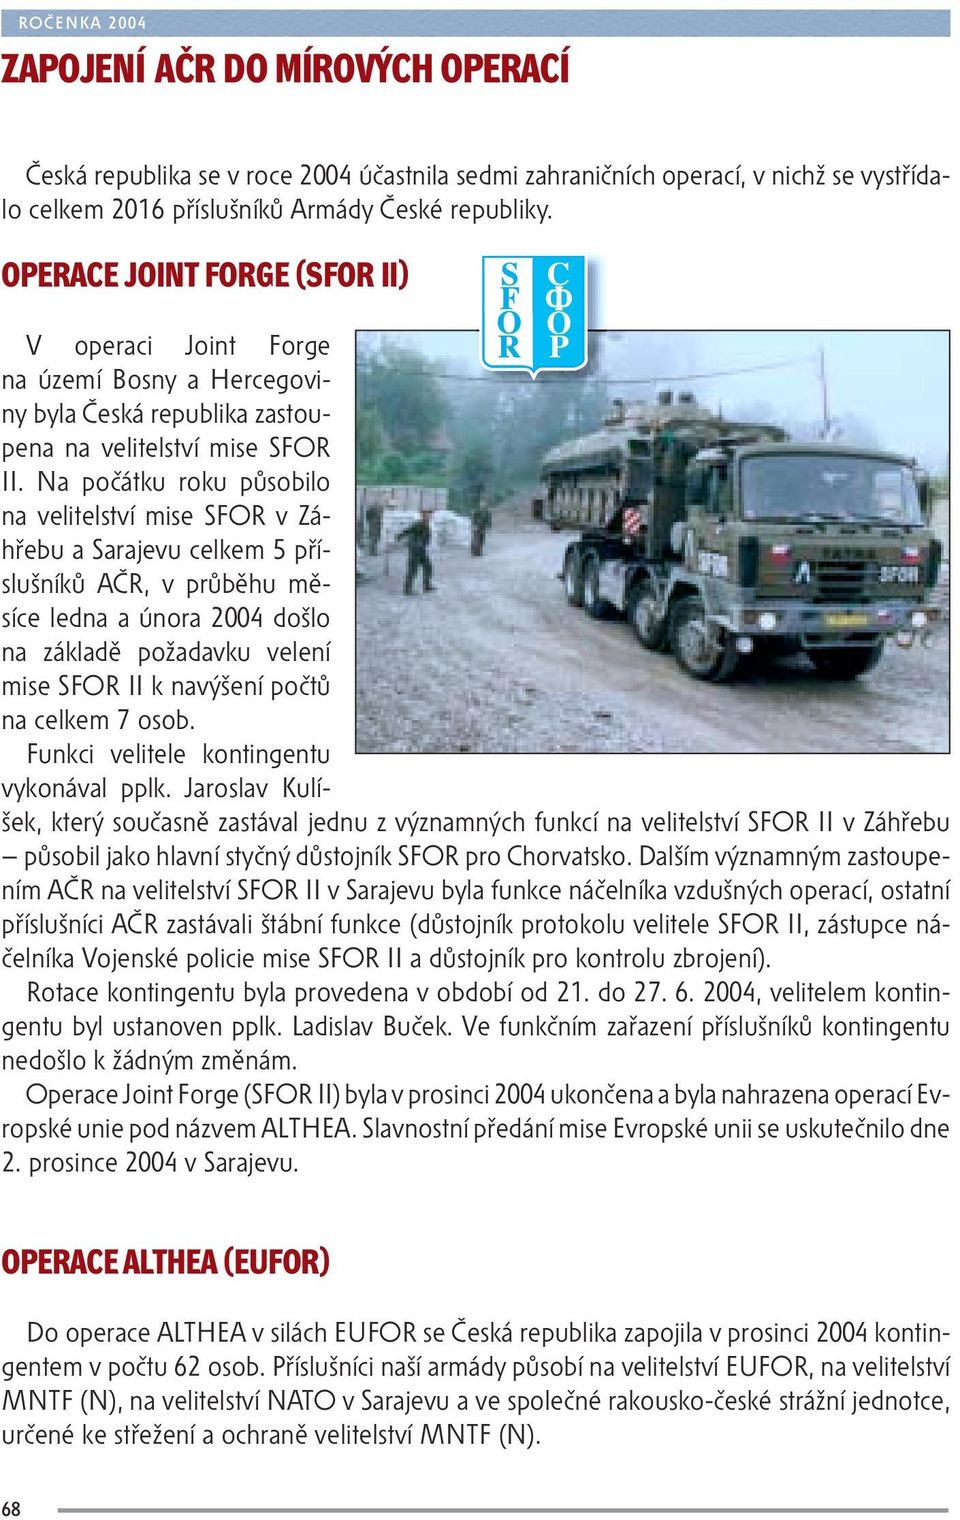 Na počátku roku působilo na velitelství mise SFOR v Záhřebu a Sarajevu celkem 5 příslušníků AČR, v průběhu měsíce ledna a února 2004 došlo na základě požadavku velení mise SFOR II k navýšení počtů na